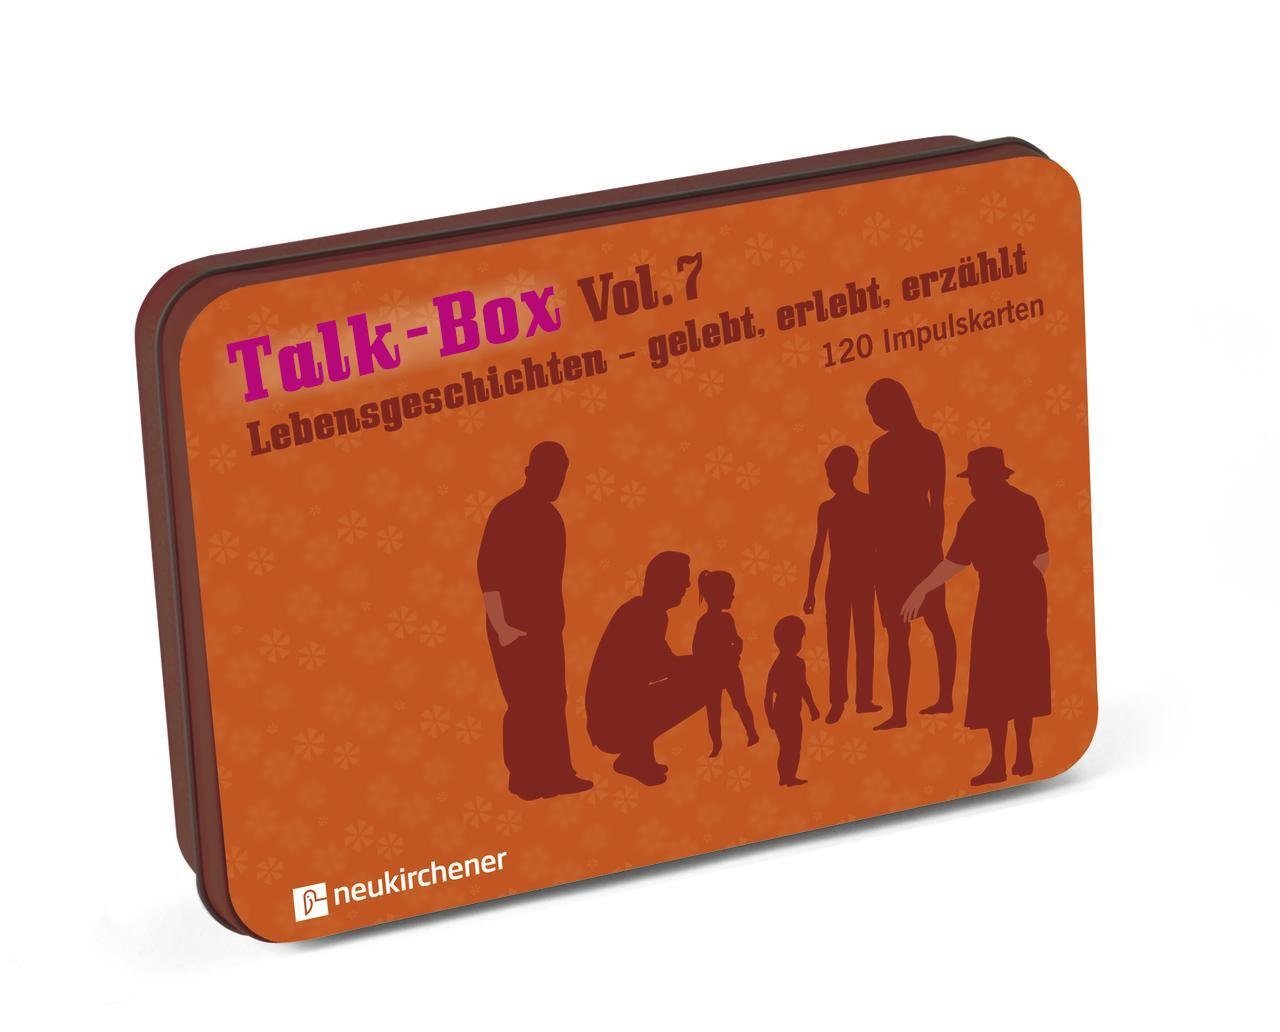 Spiel, Talk-Box Vol. 7 - Lebensgeschichten - gelebt, erlebt, erzählt